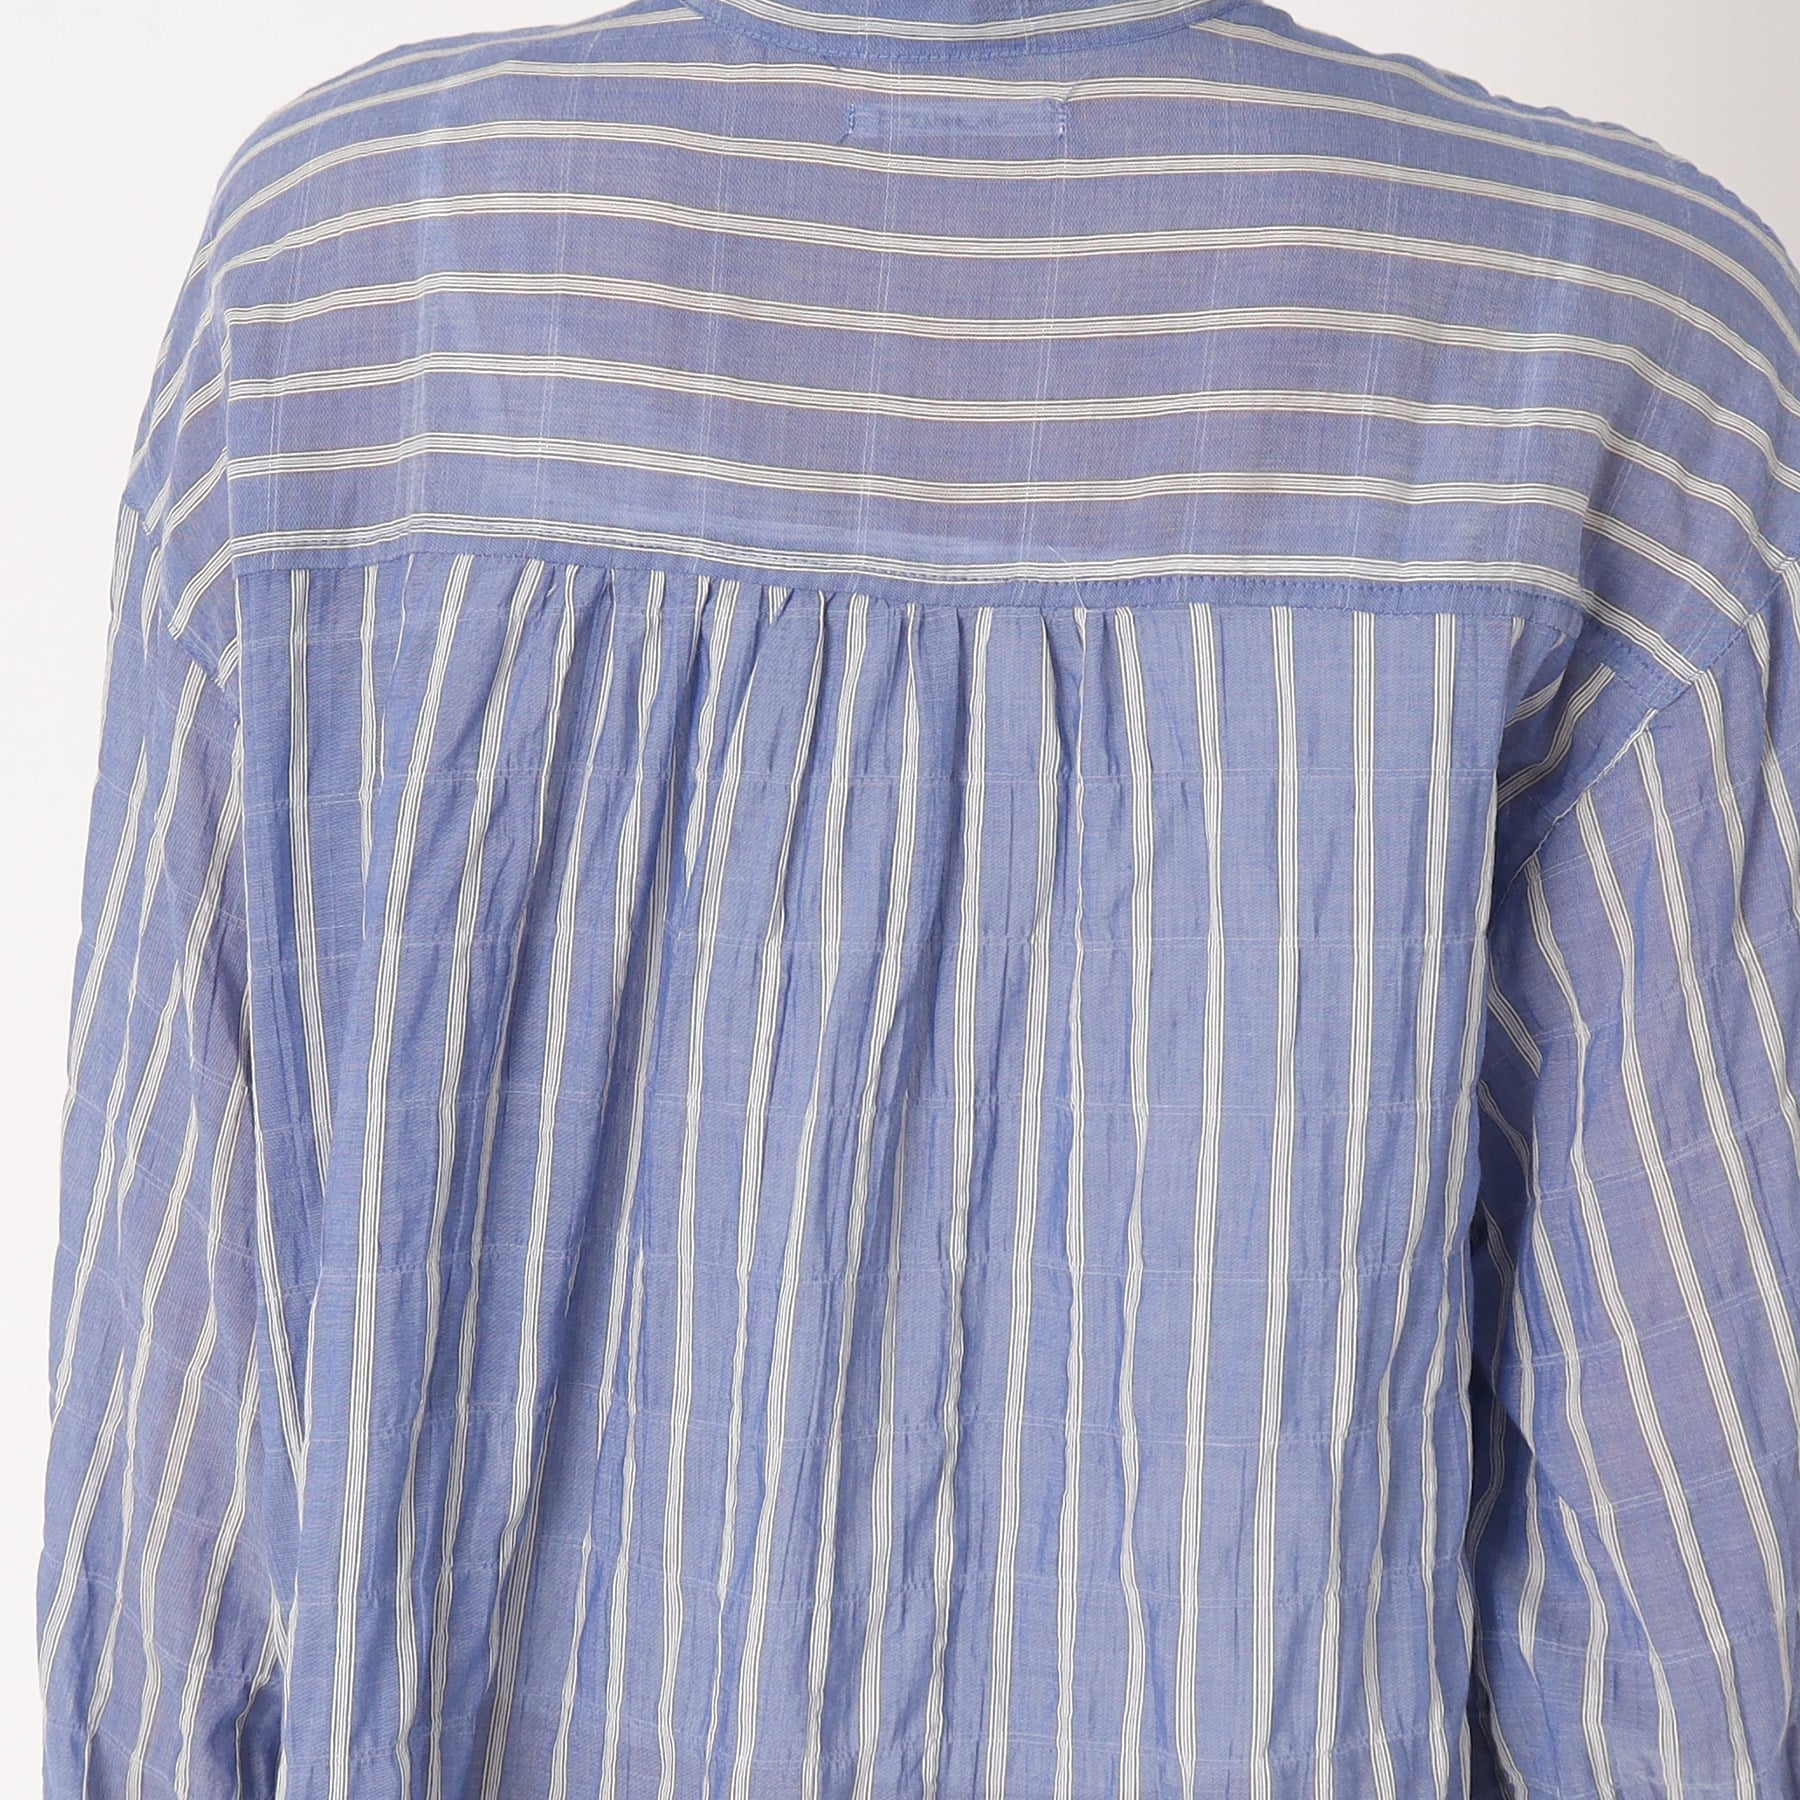 ルコリ(le colis)のユルシャーリングWポケットシャツ6